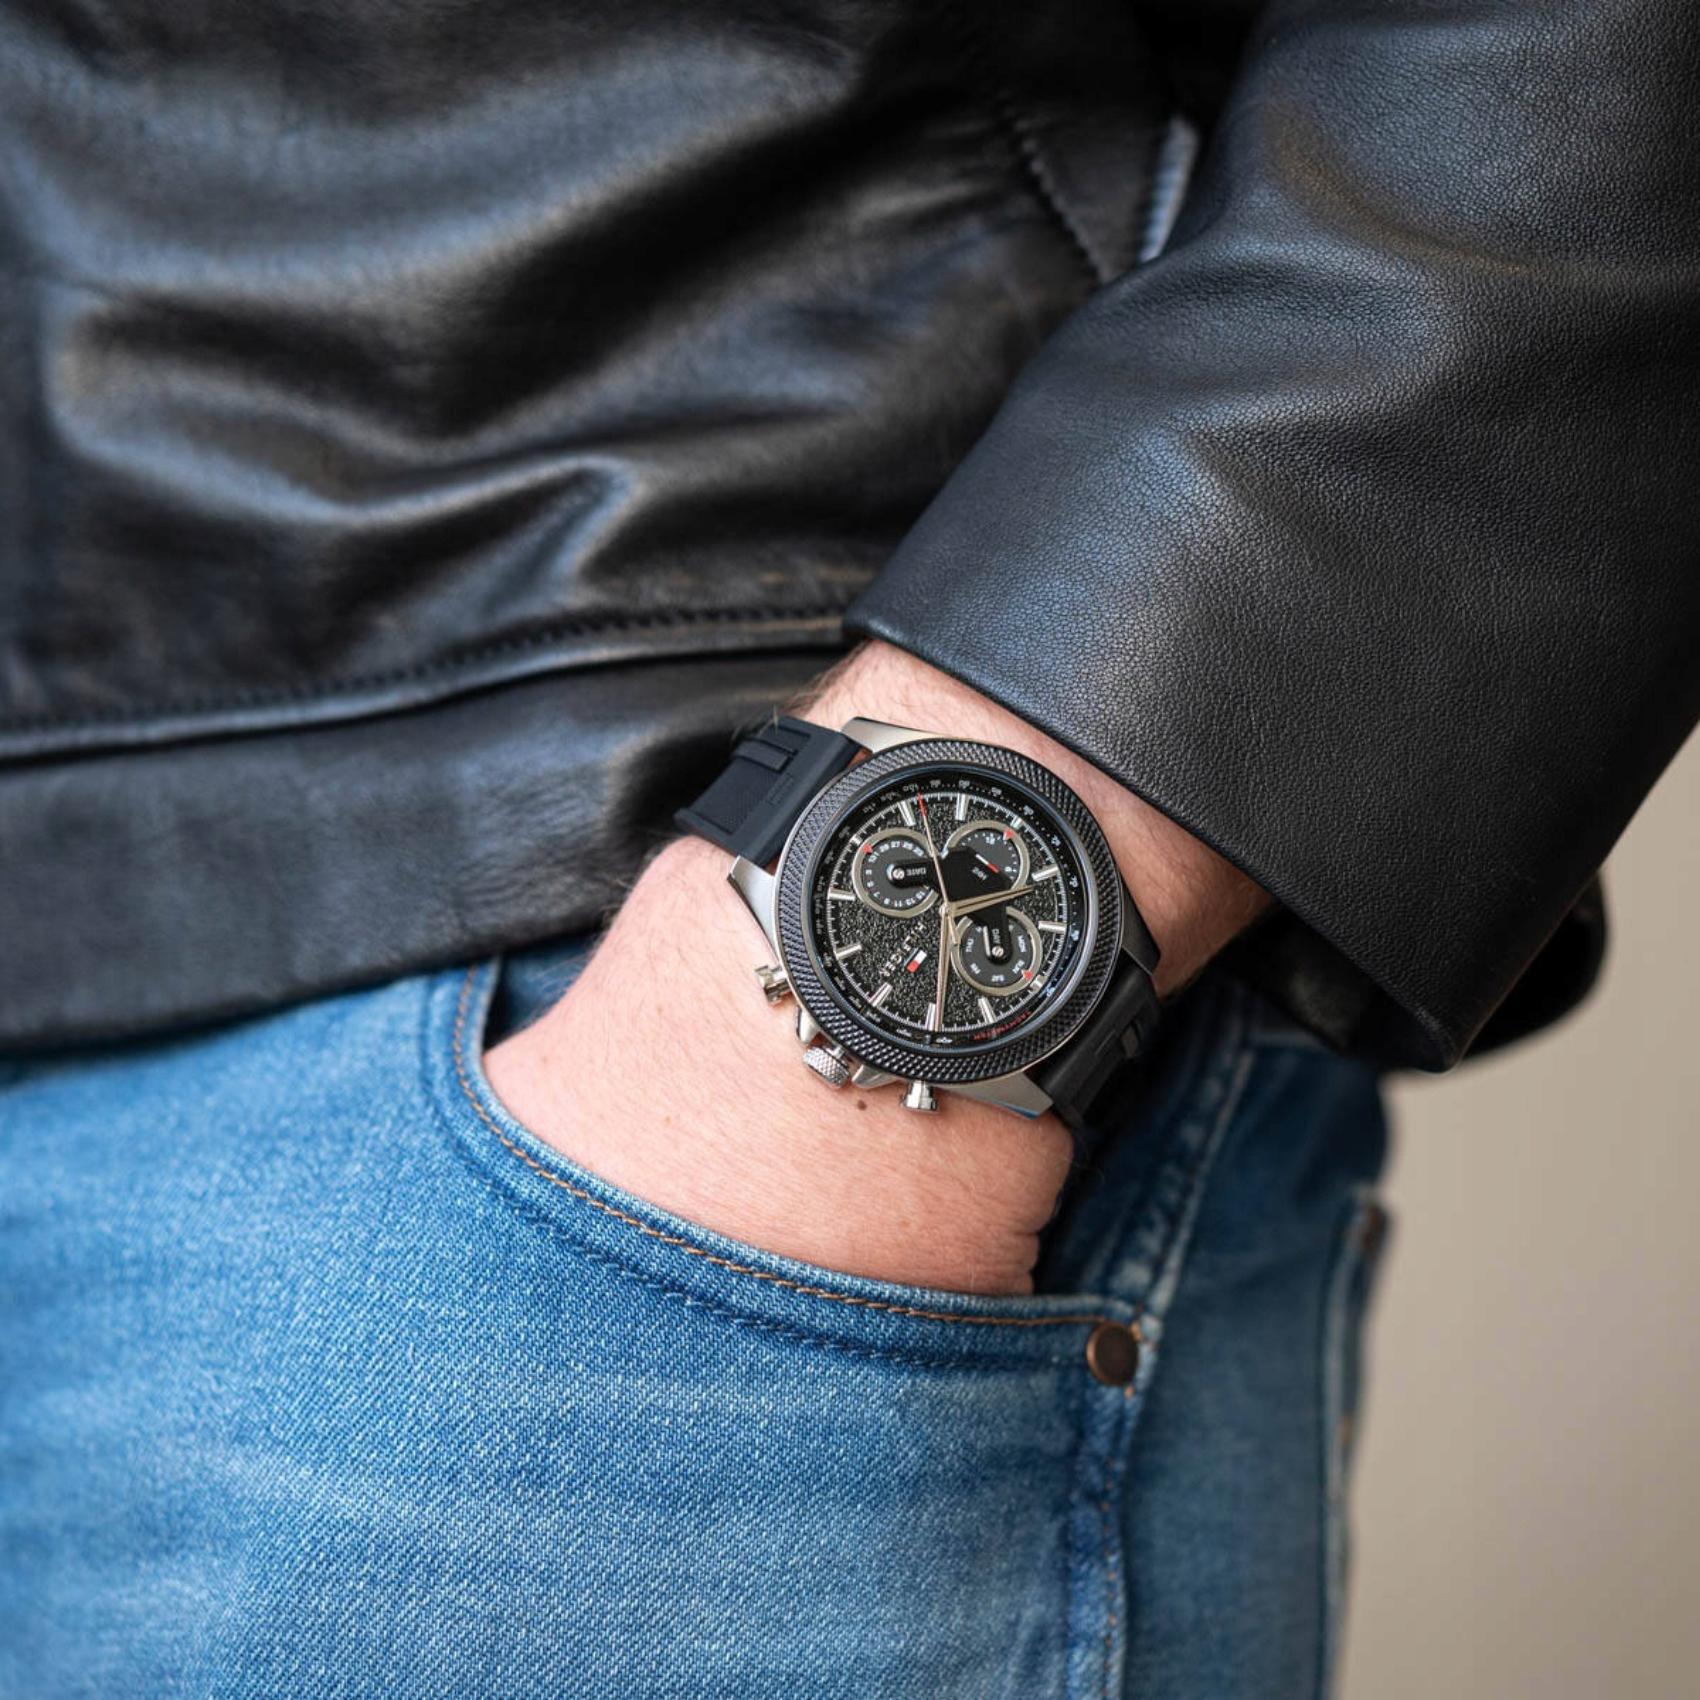 Ανδρικό ρολόι Tommy Hilfiger Clark 1792082 με μαύρο καουτσούκ λουράκι και μαύρο καντράν διαμέτρου 46mm με ημερομηνία-ημέρα.